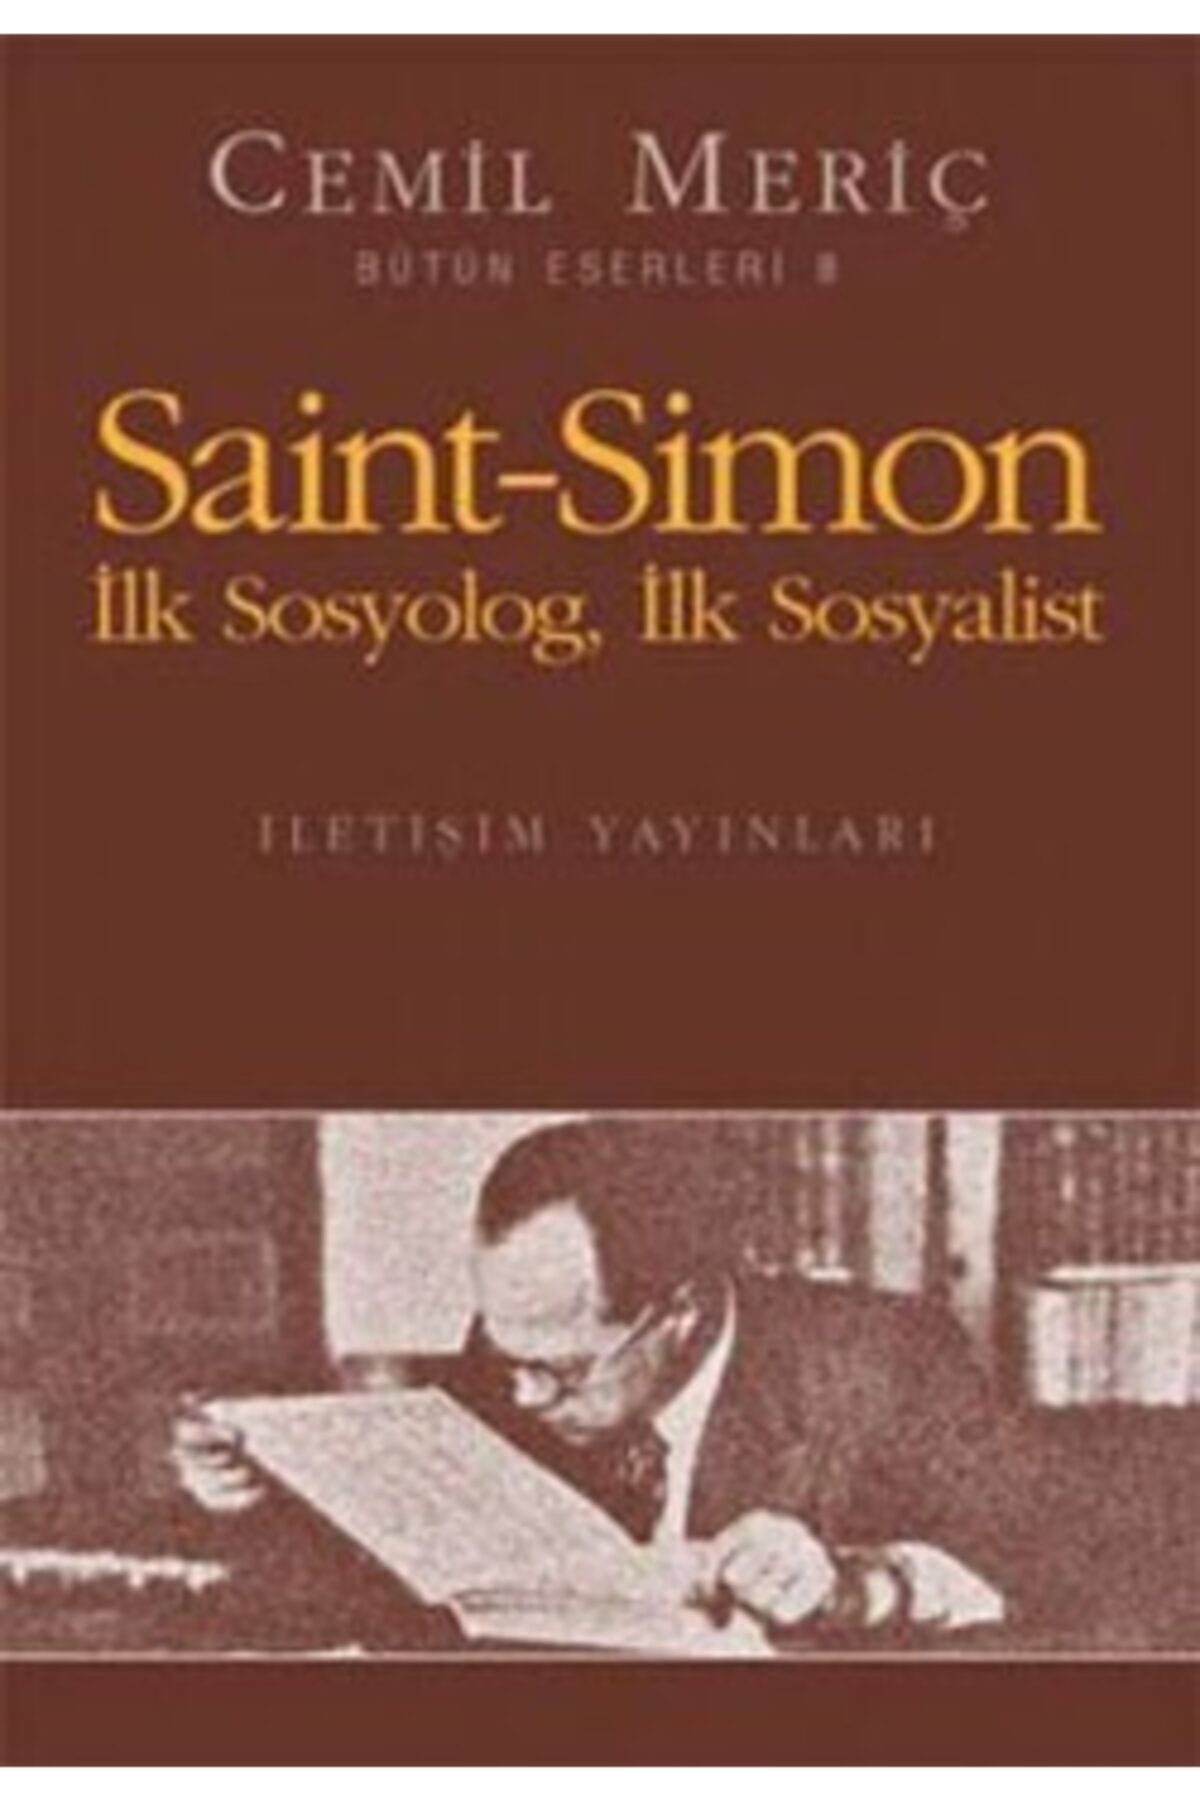 İletişim Yayınları Saint Simon: Ilk Sosyolog, Ilk Sosyalist - Cemil Meriç -